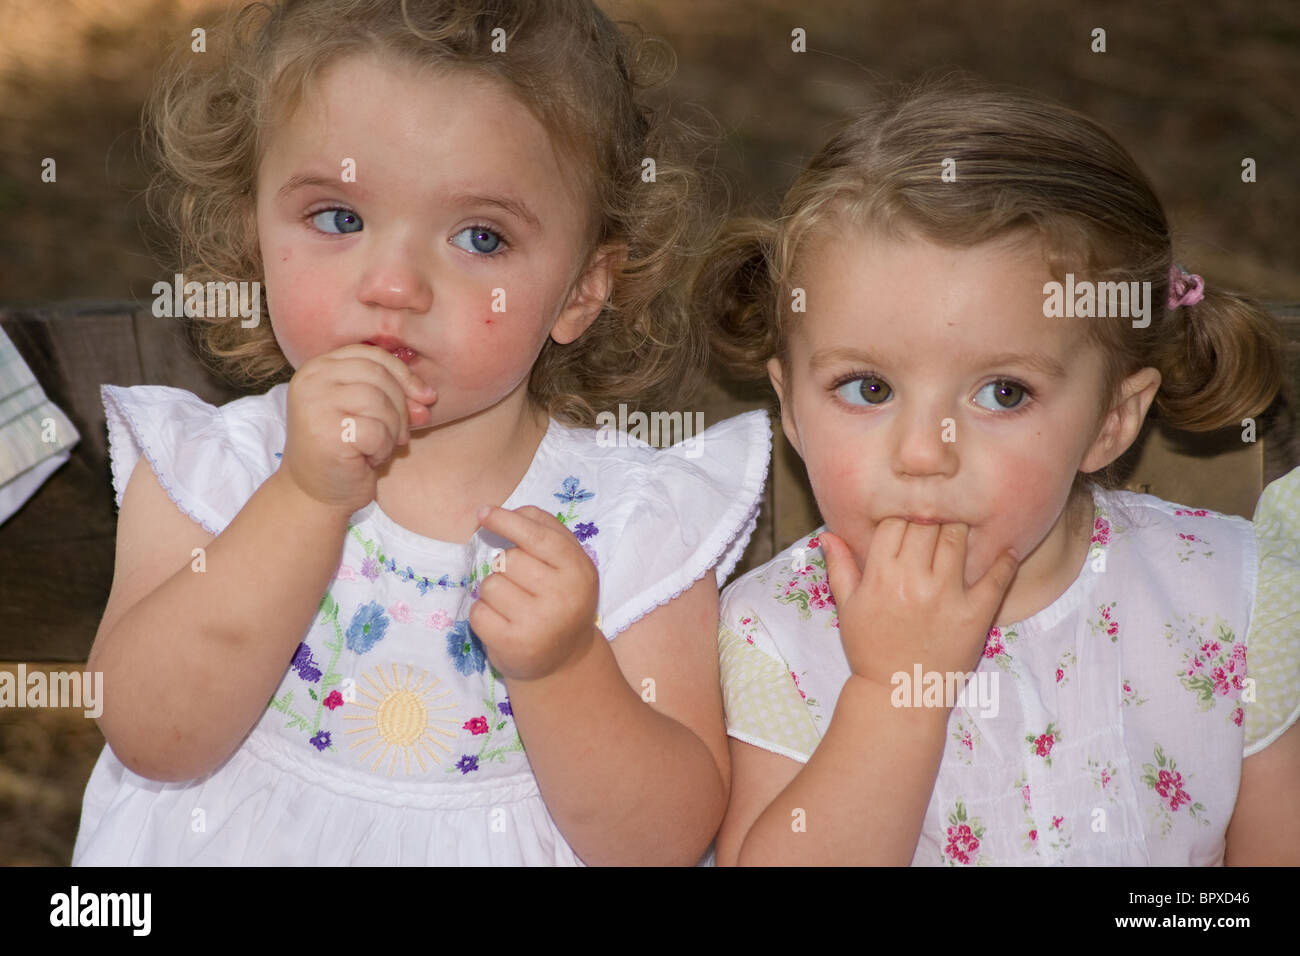 Zwillinge Kleinkinder Babys ziehen Grimassen ähnliche Stockfoto